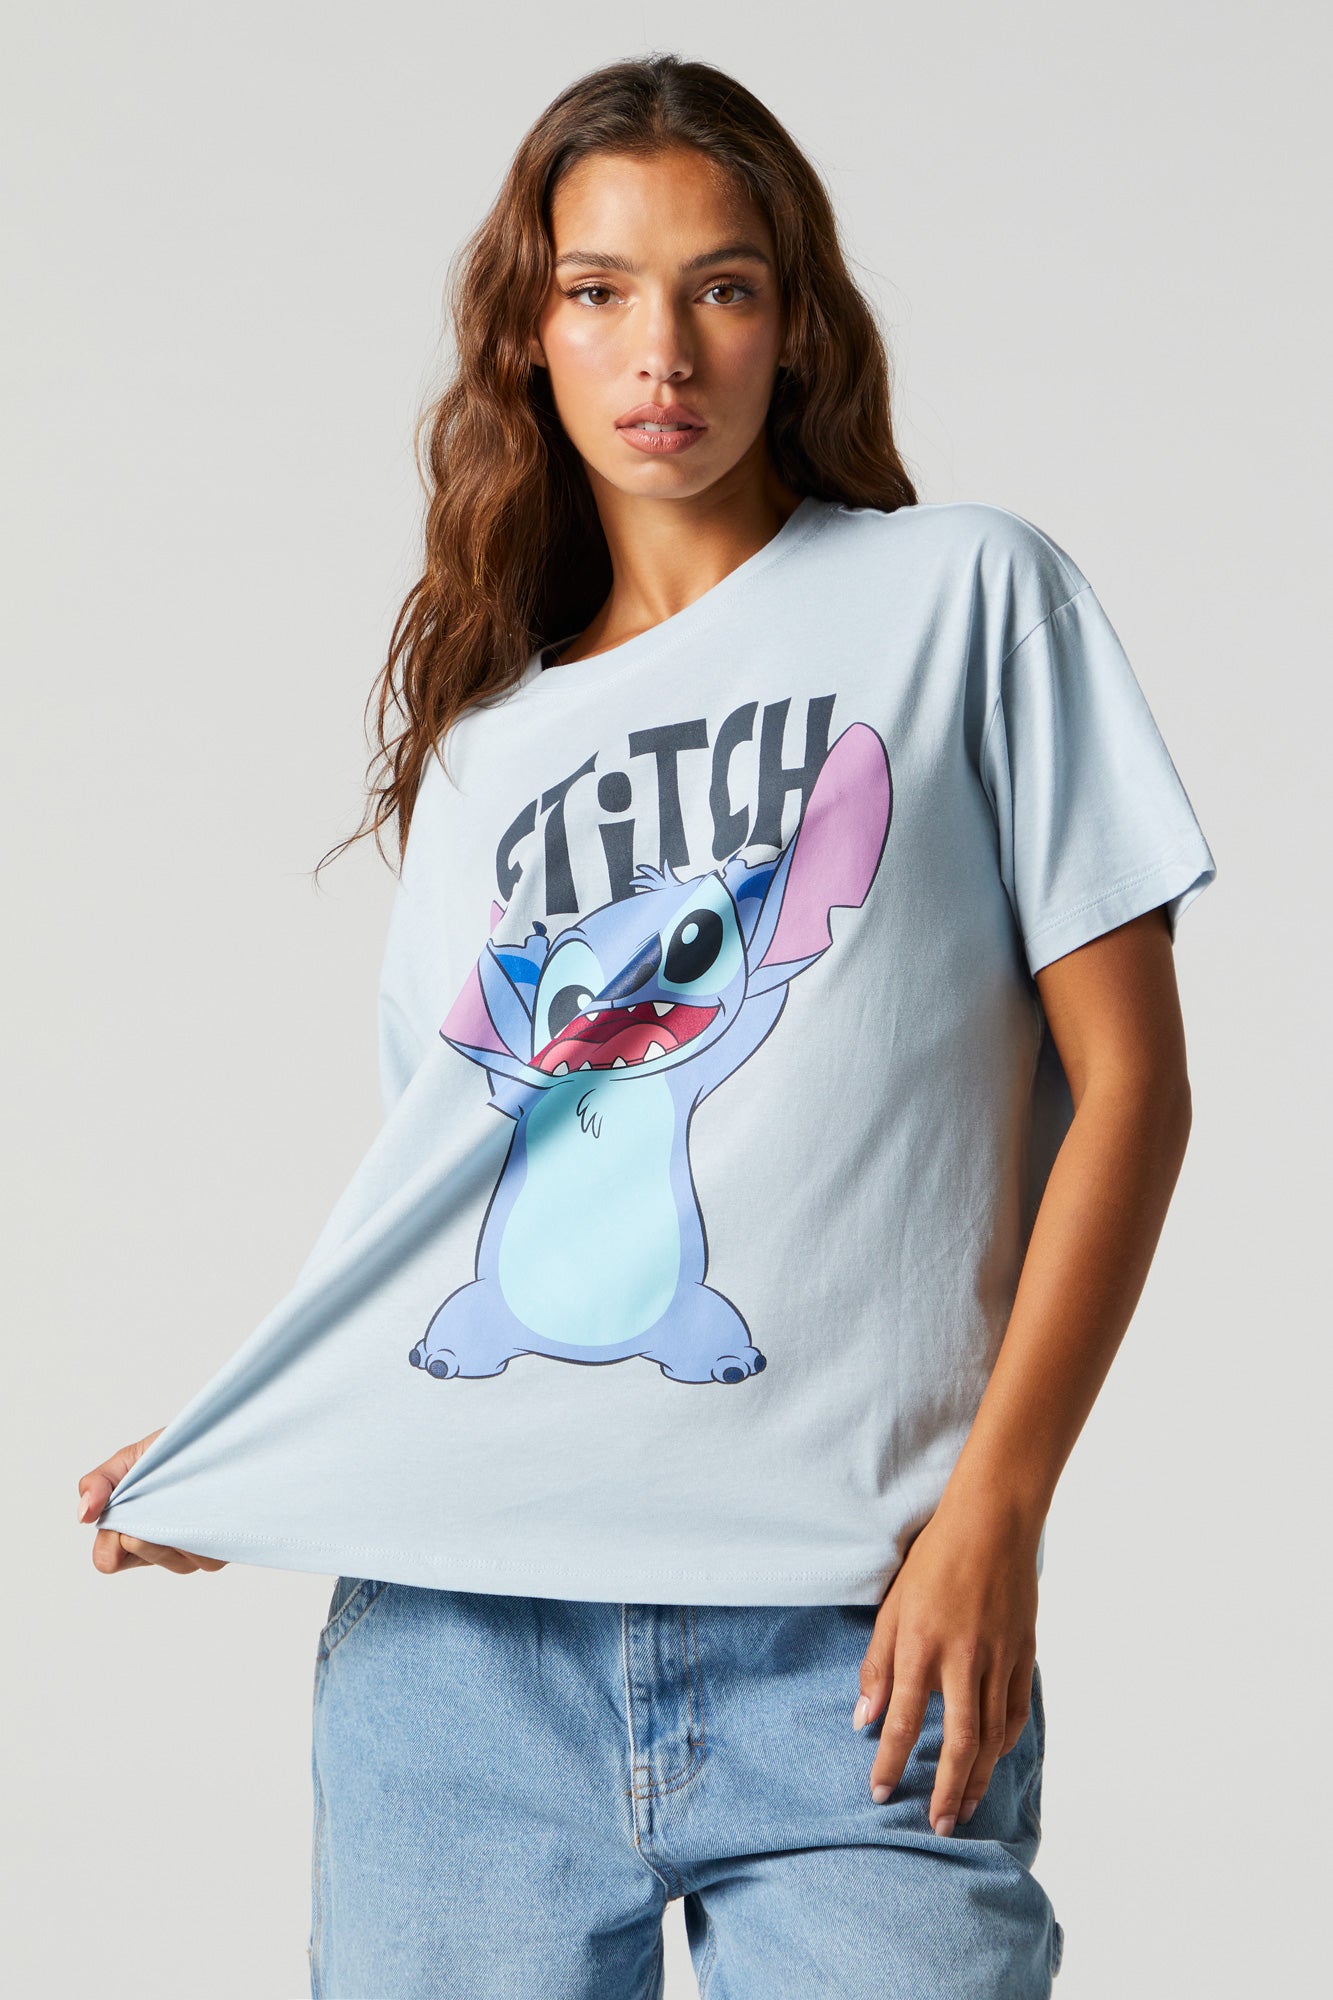 Stitch Graphic Boyfriend T-shirt